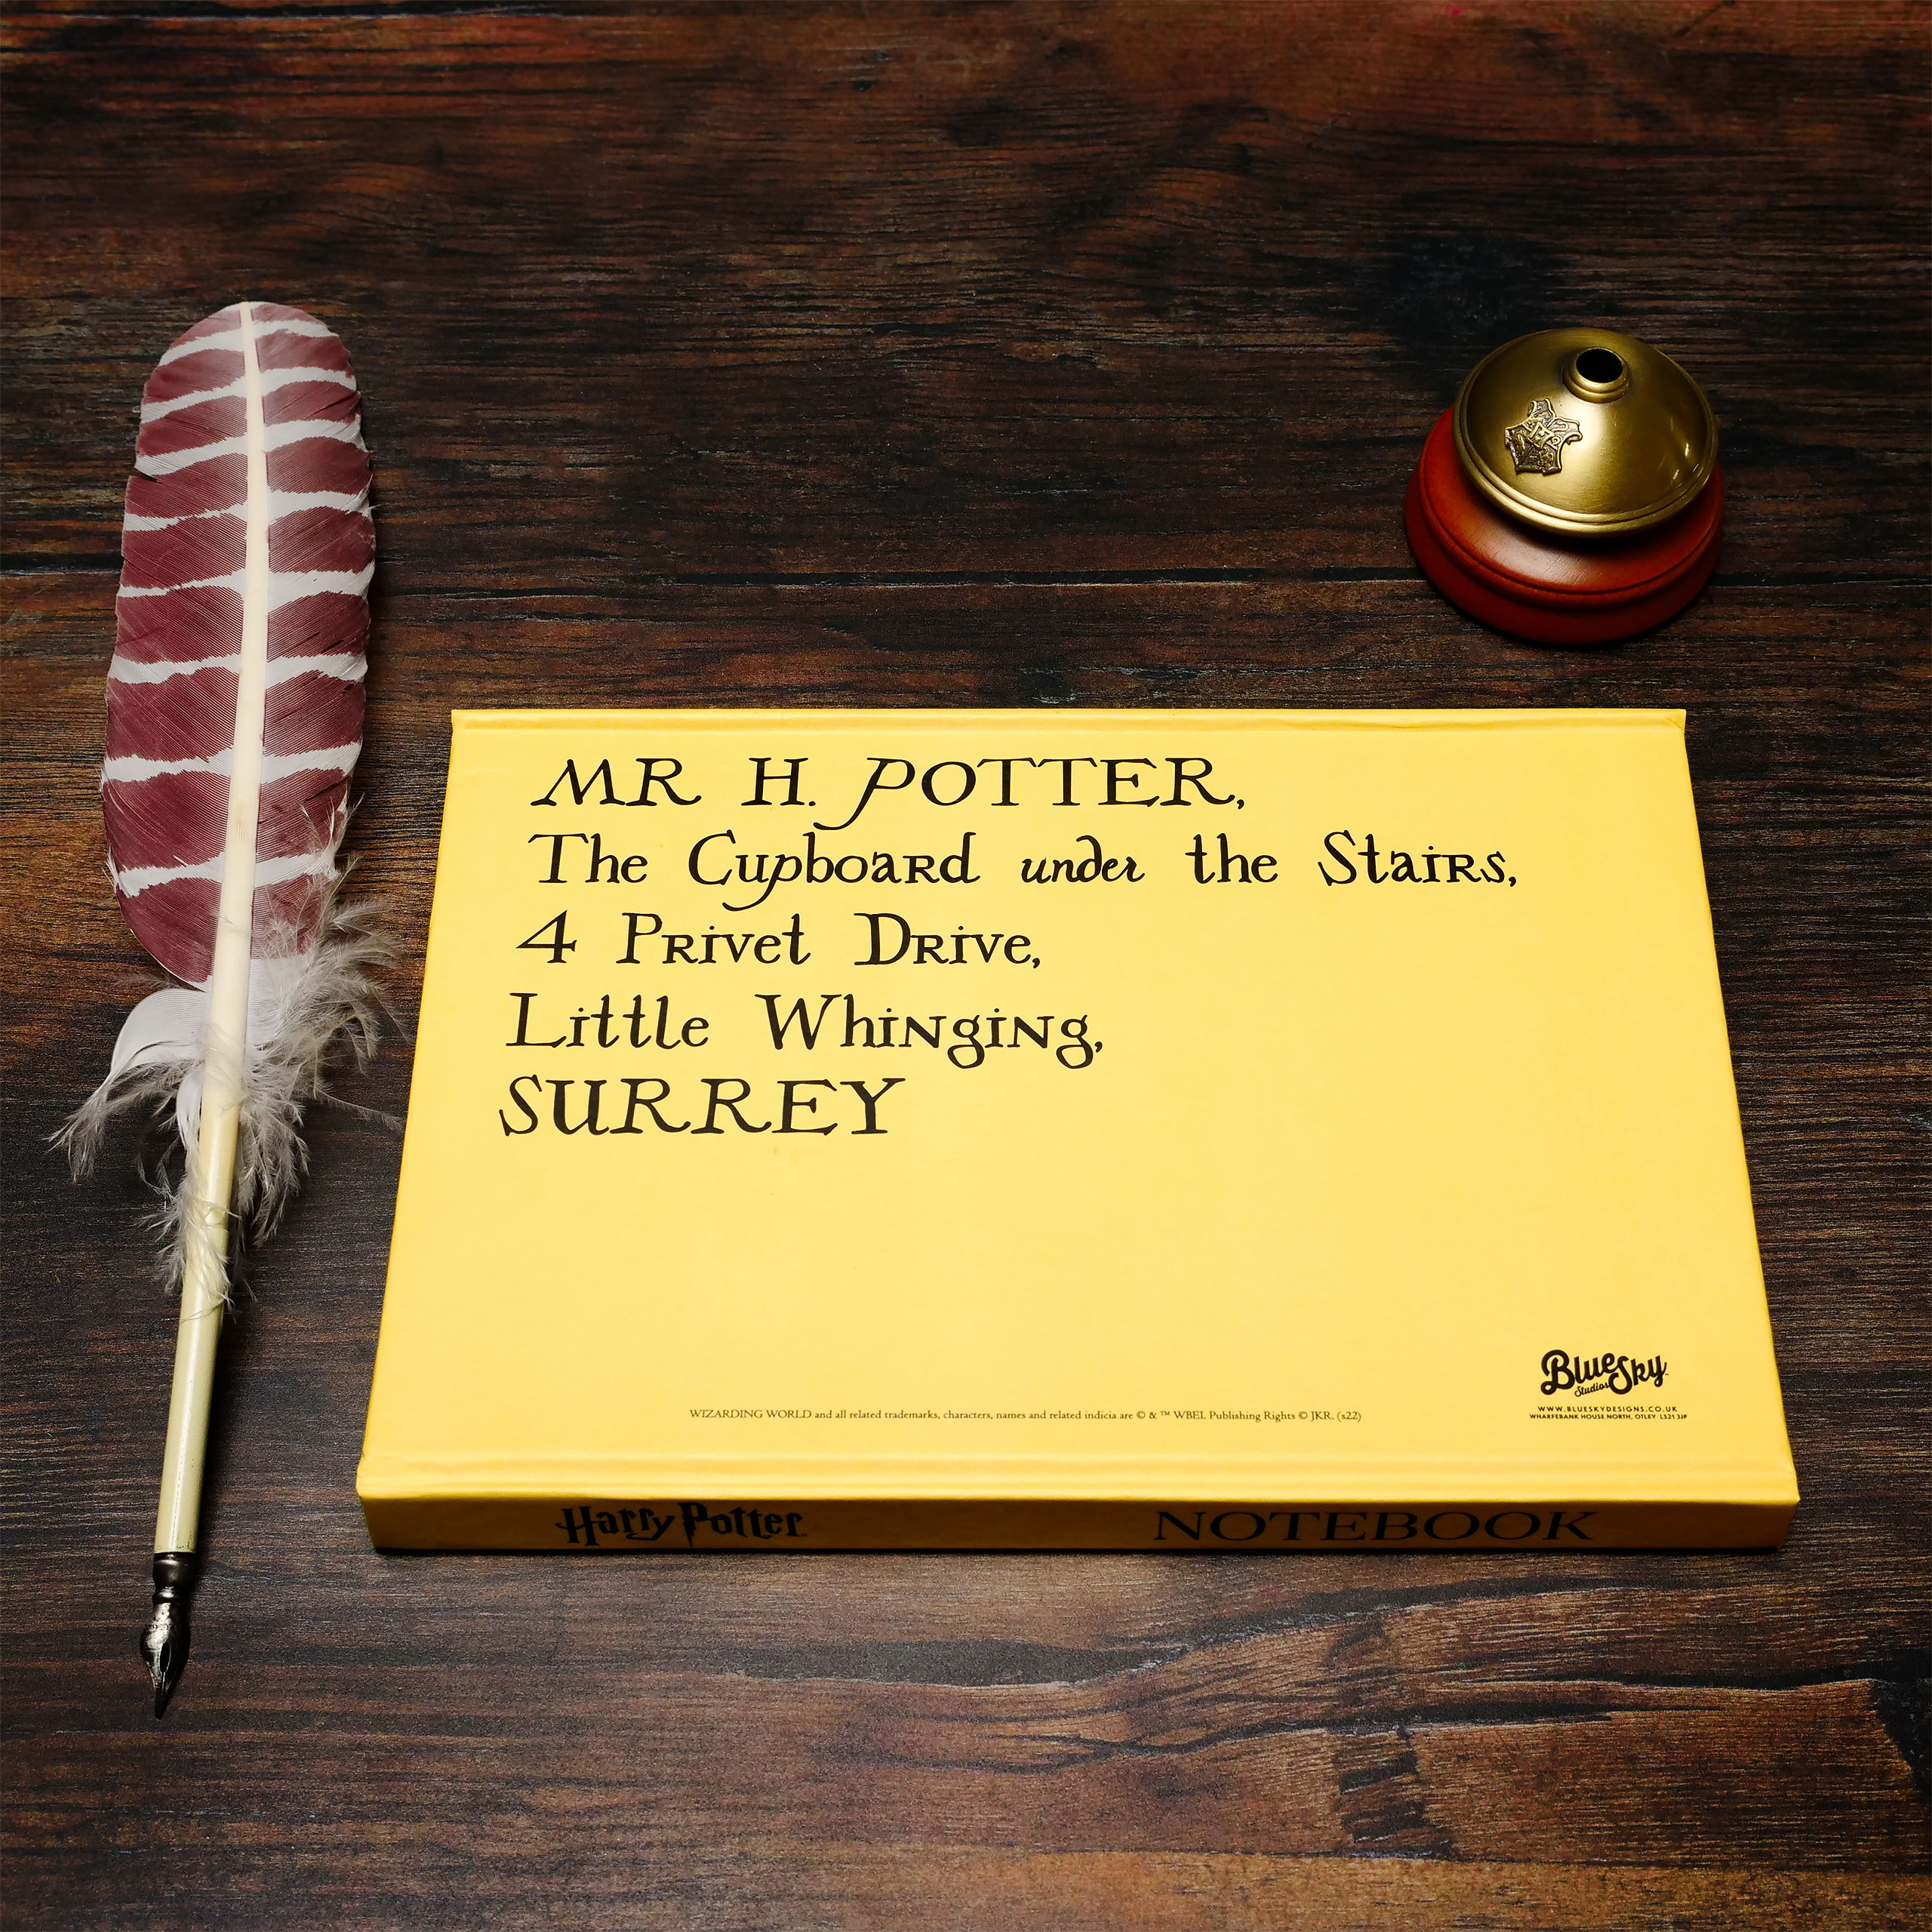 Hogwarts Brief Notizbuch mit Magnetverschluss A5 - Harry Potter